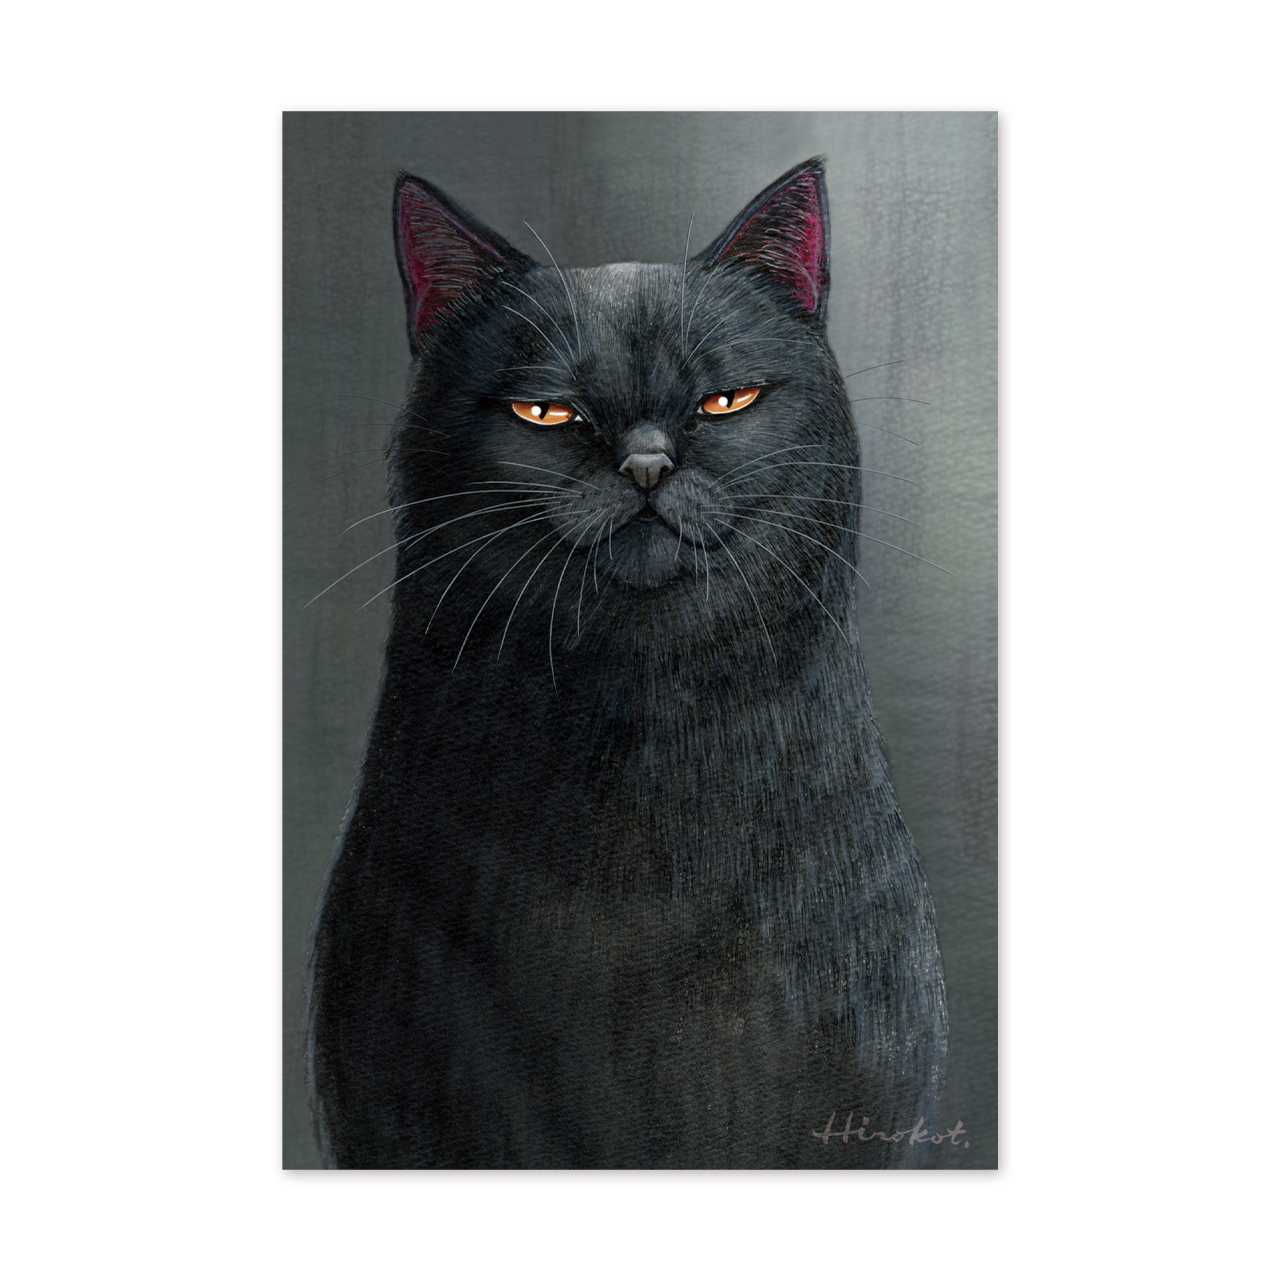 29 ある孤高の黒猫の肖像 ポストカード The Portrait Of A Solitary Black Cat Postcard イラストレーター たなかひろこ